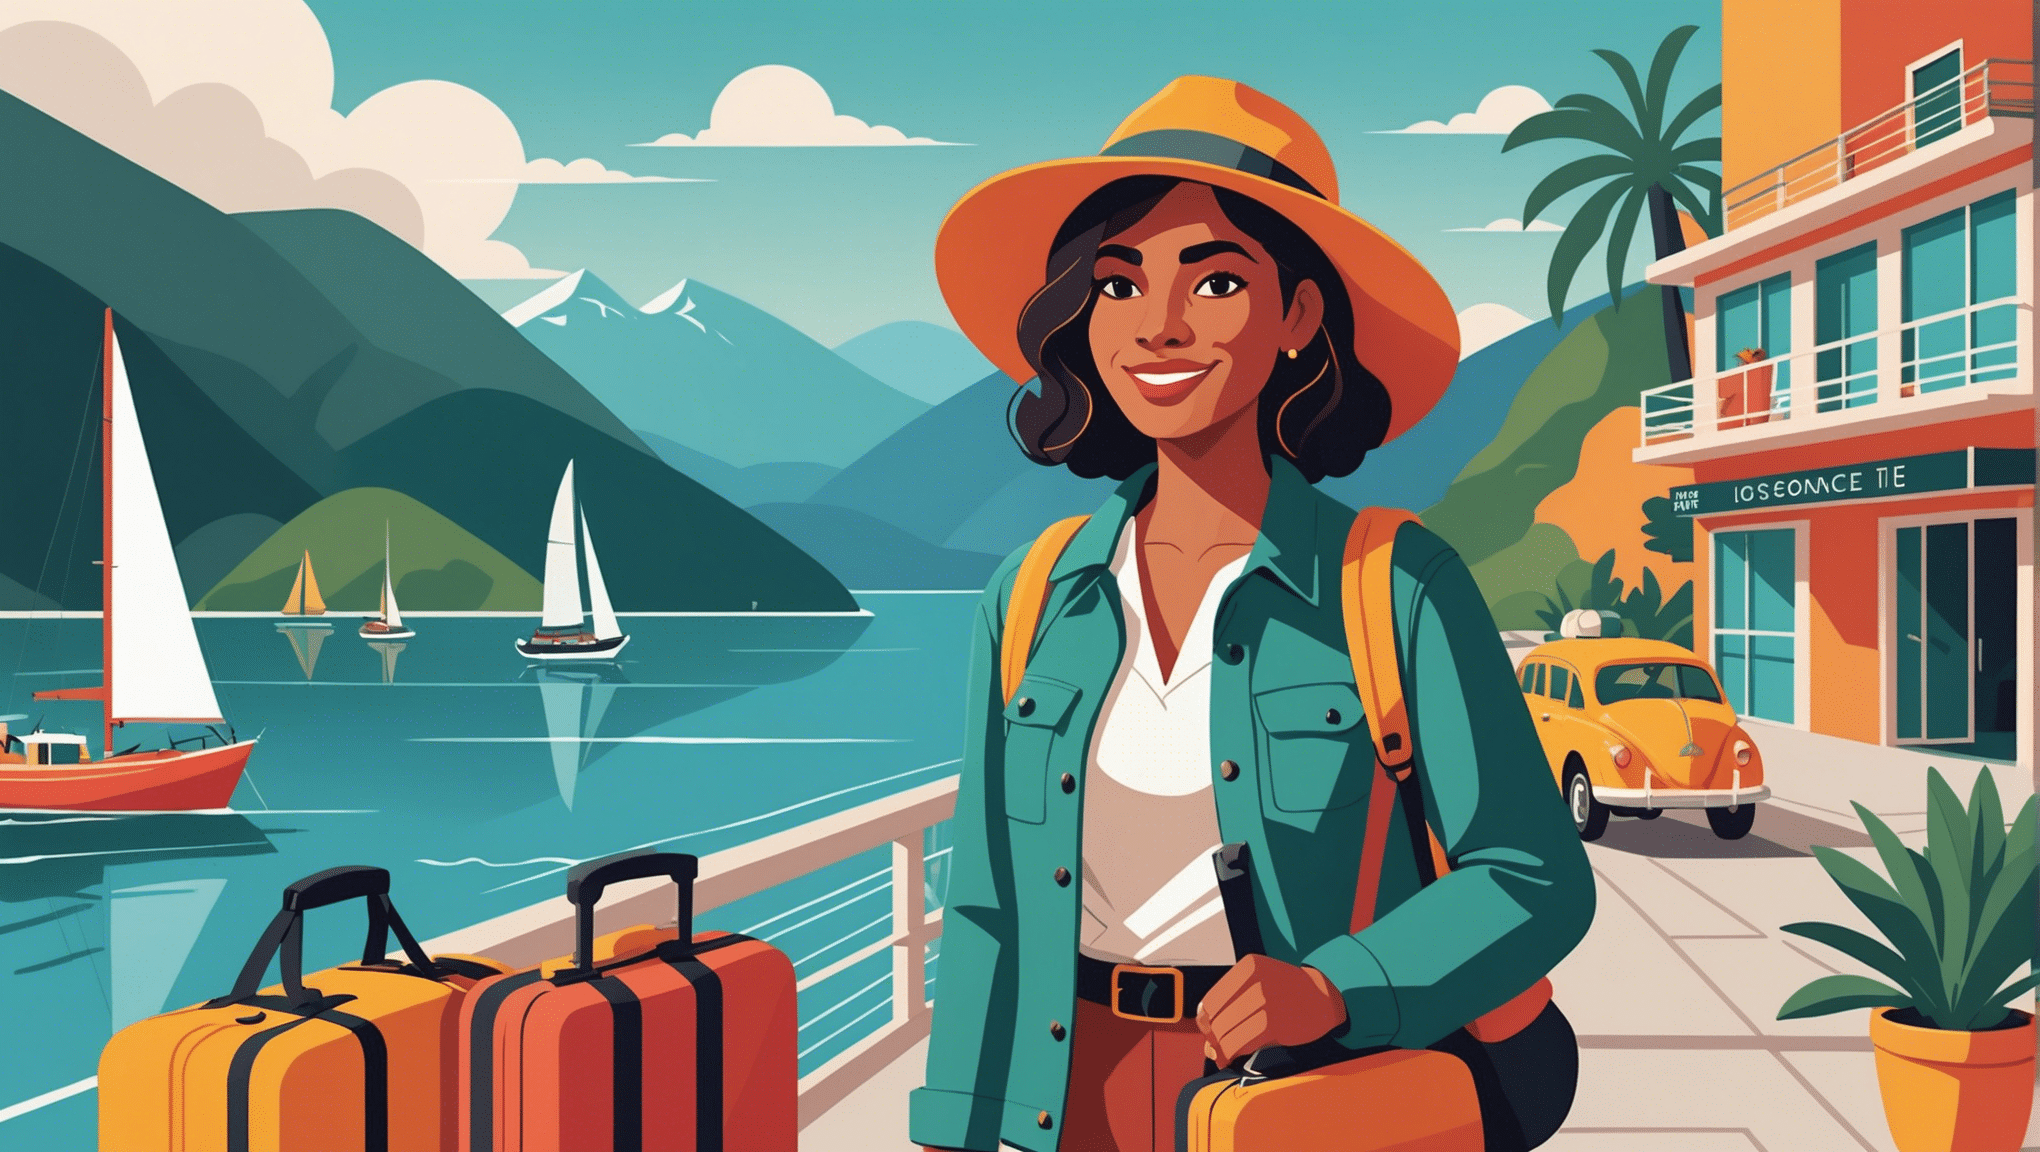 découvrez des conseils de sécurité essentiels pour voyager en solo en tant que femme et profitez pleinement de votre expérience de voyage.